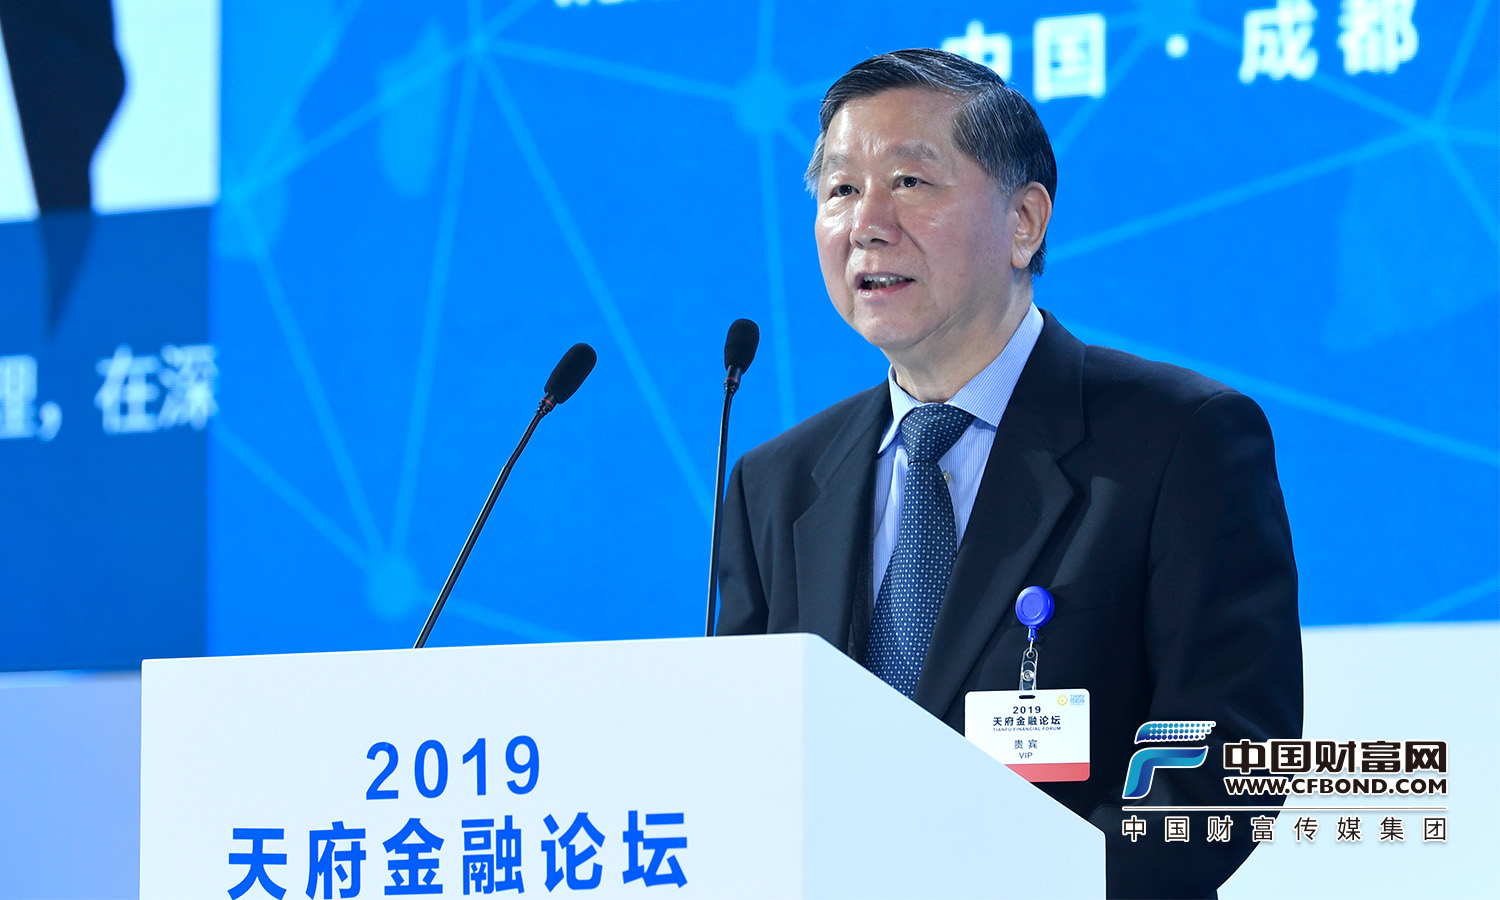 全国政协经济委员会主任、原中国银监会主席尚福林发表主旨演讲